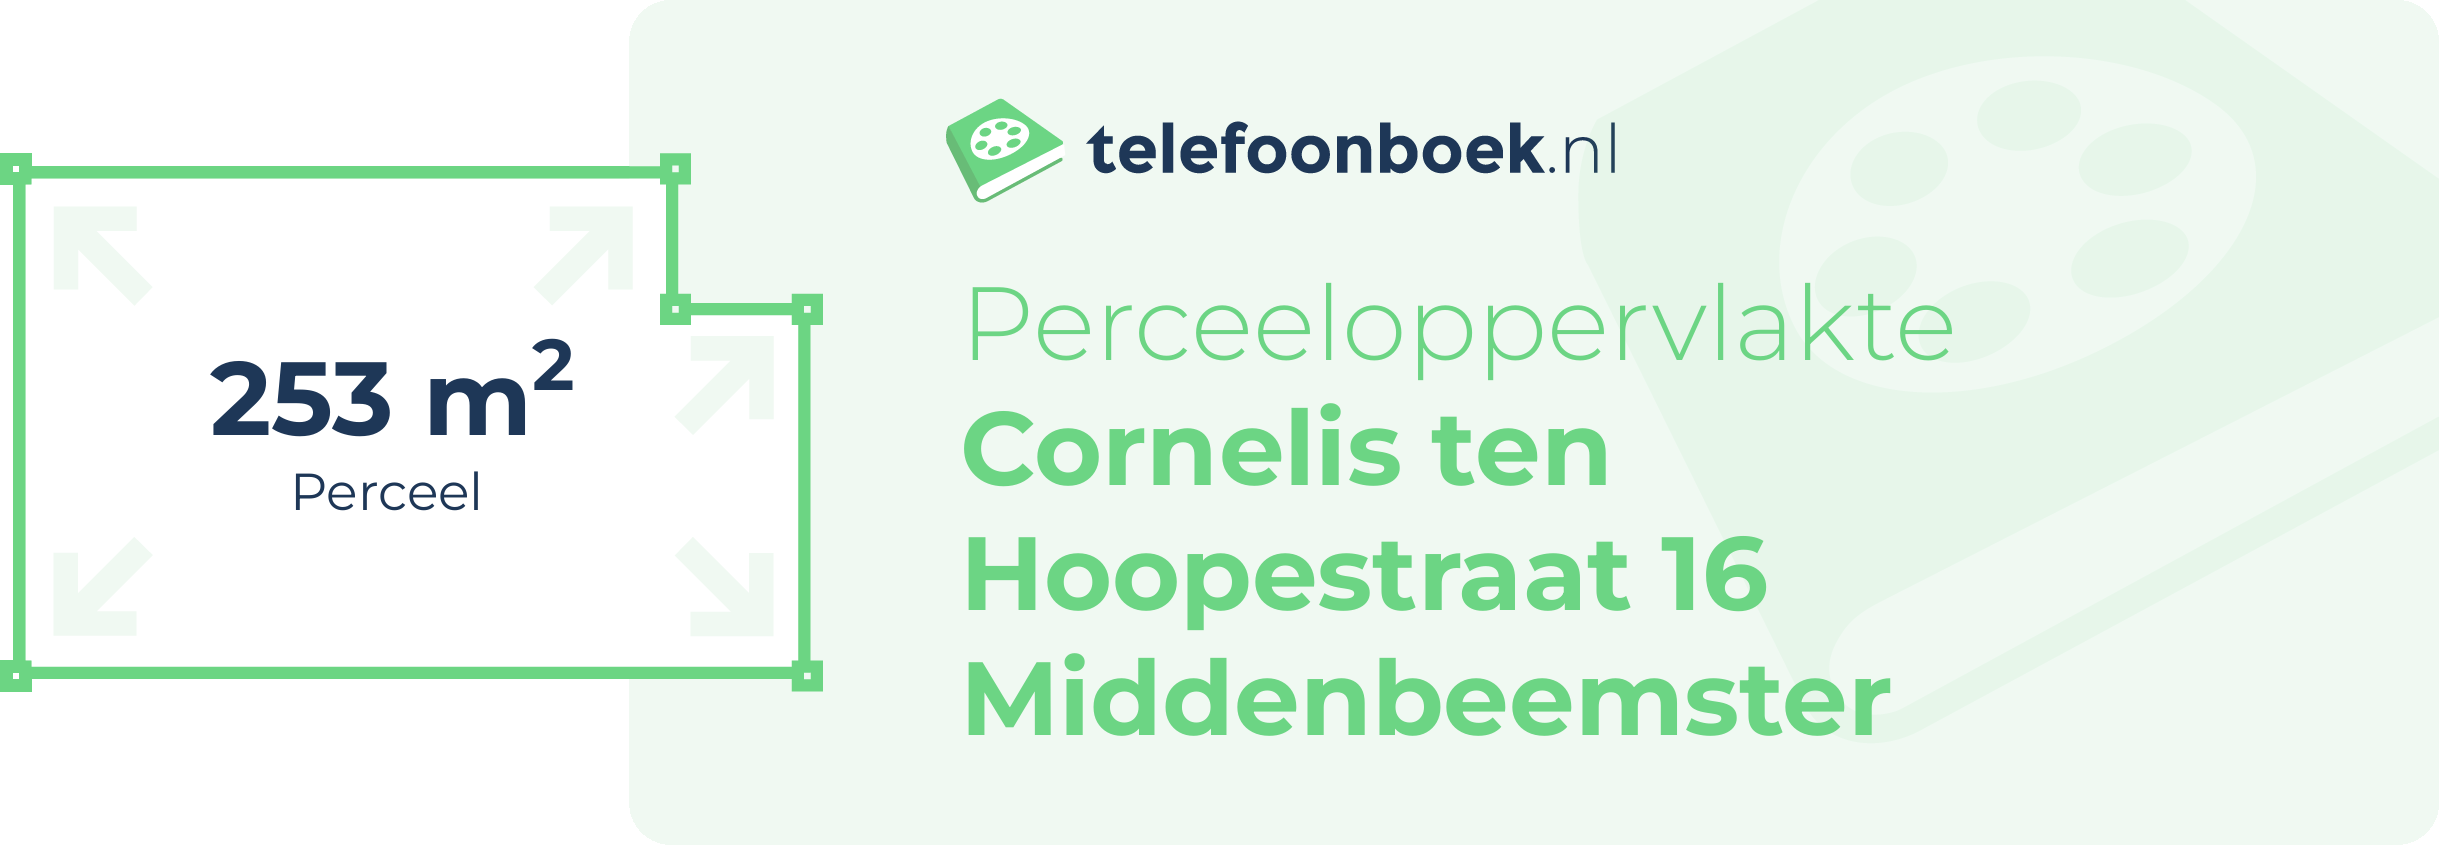 Perceeloppervlakte Cornelis Ten Hoopestraat 16 Middenbeemster